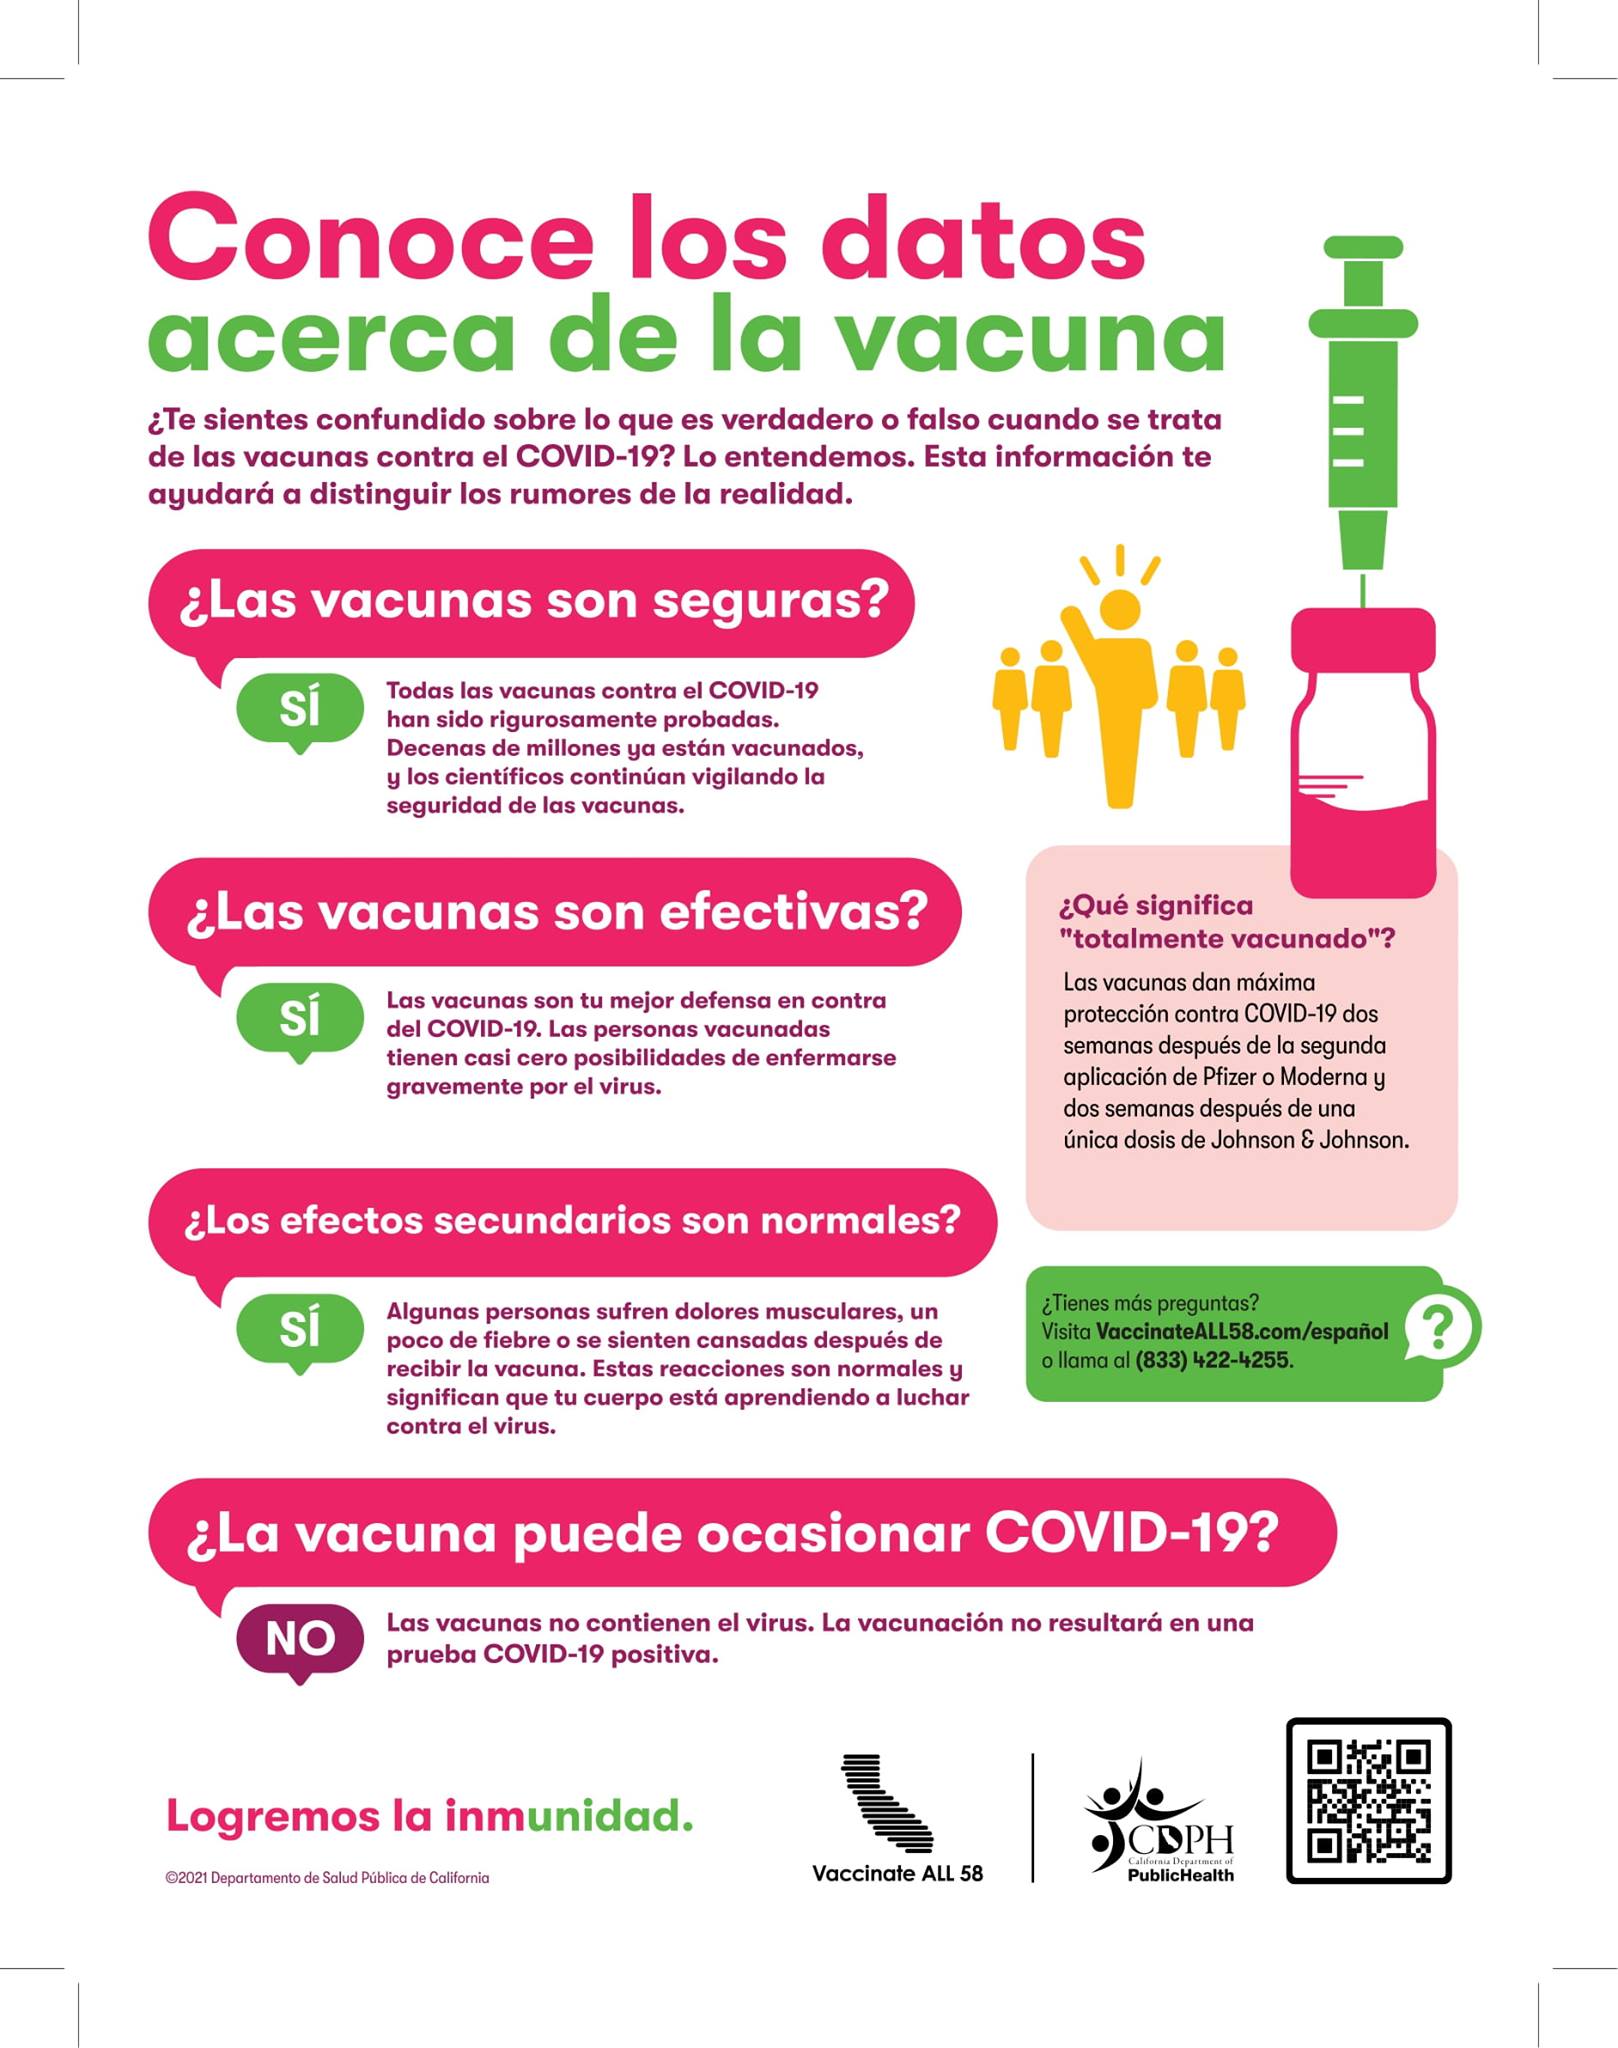 Vaccines Work 